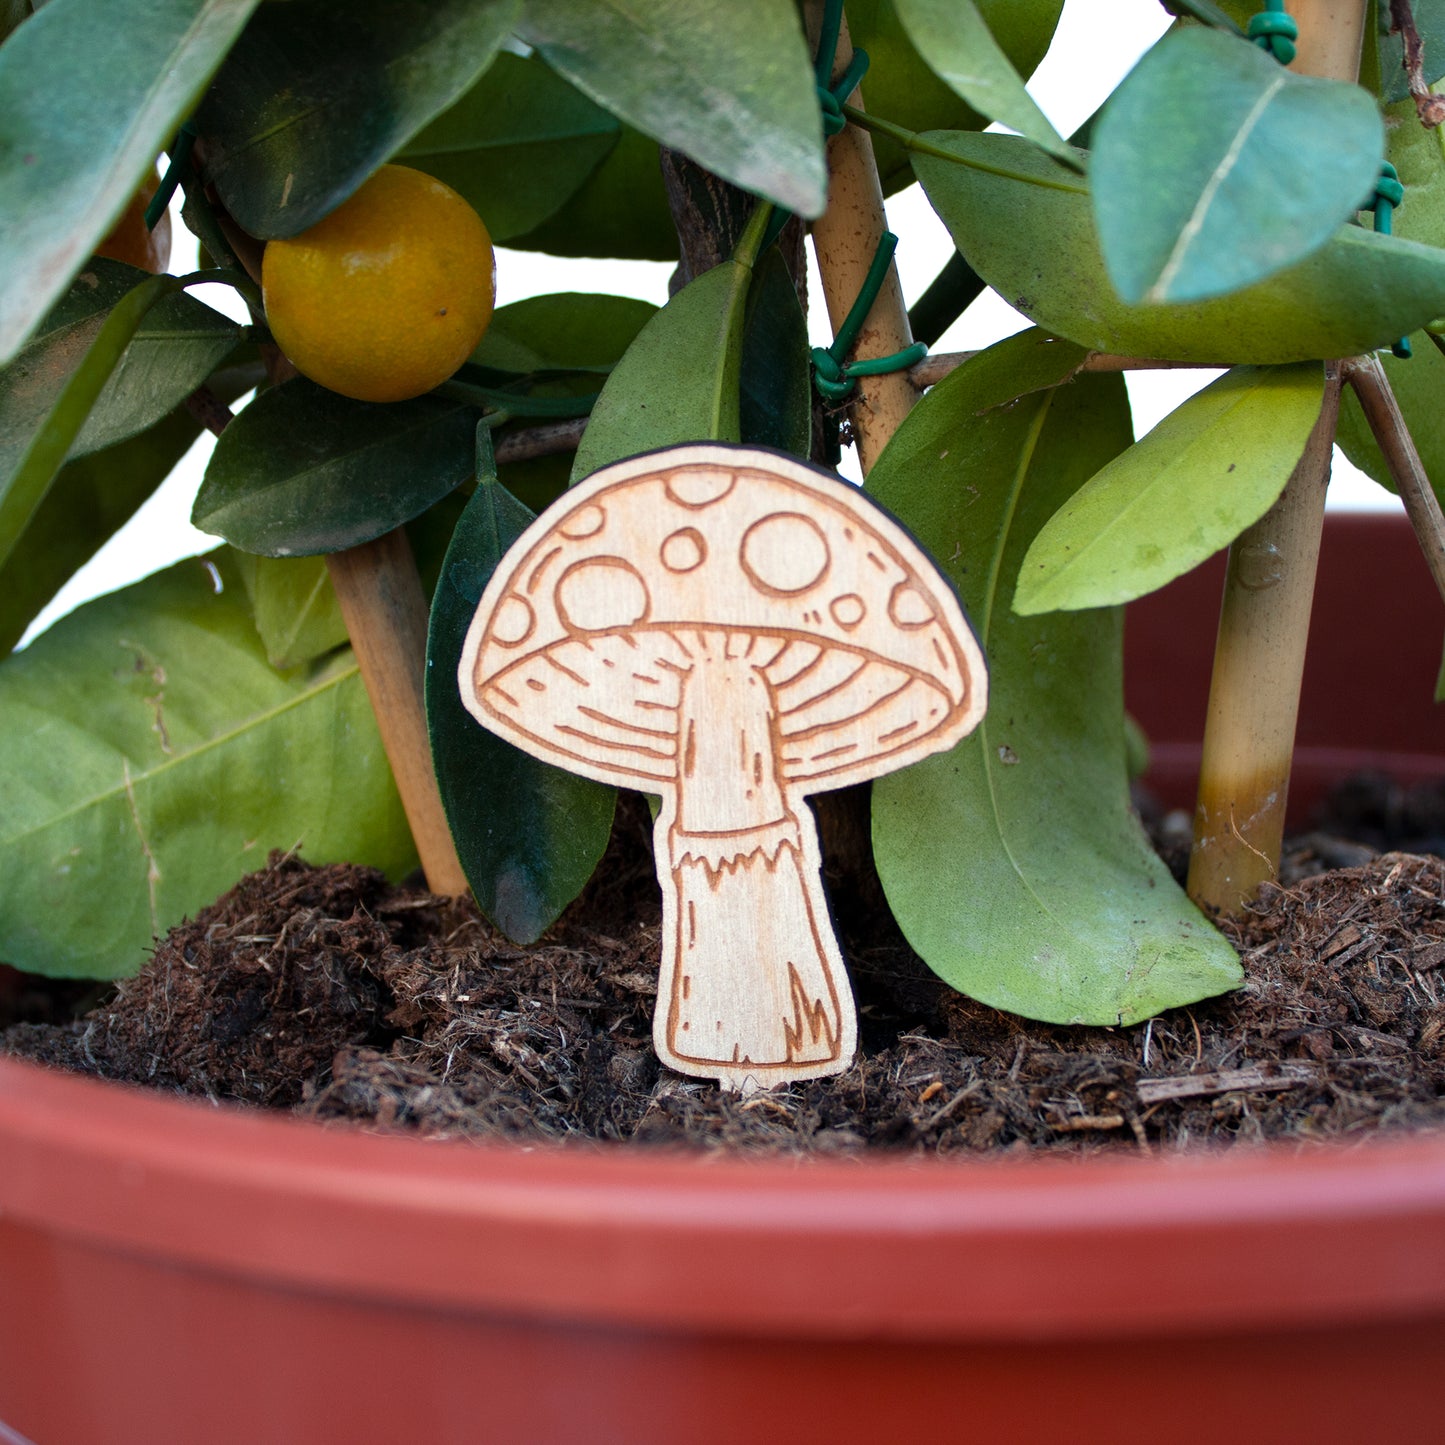 Wooden Mushroom Garden Decorations, 4 Fungi Plant Pot Ornaments, Toadstools